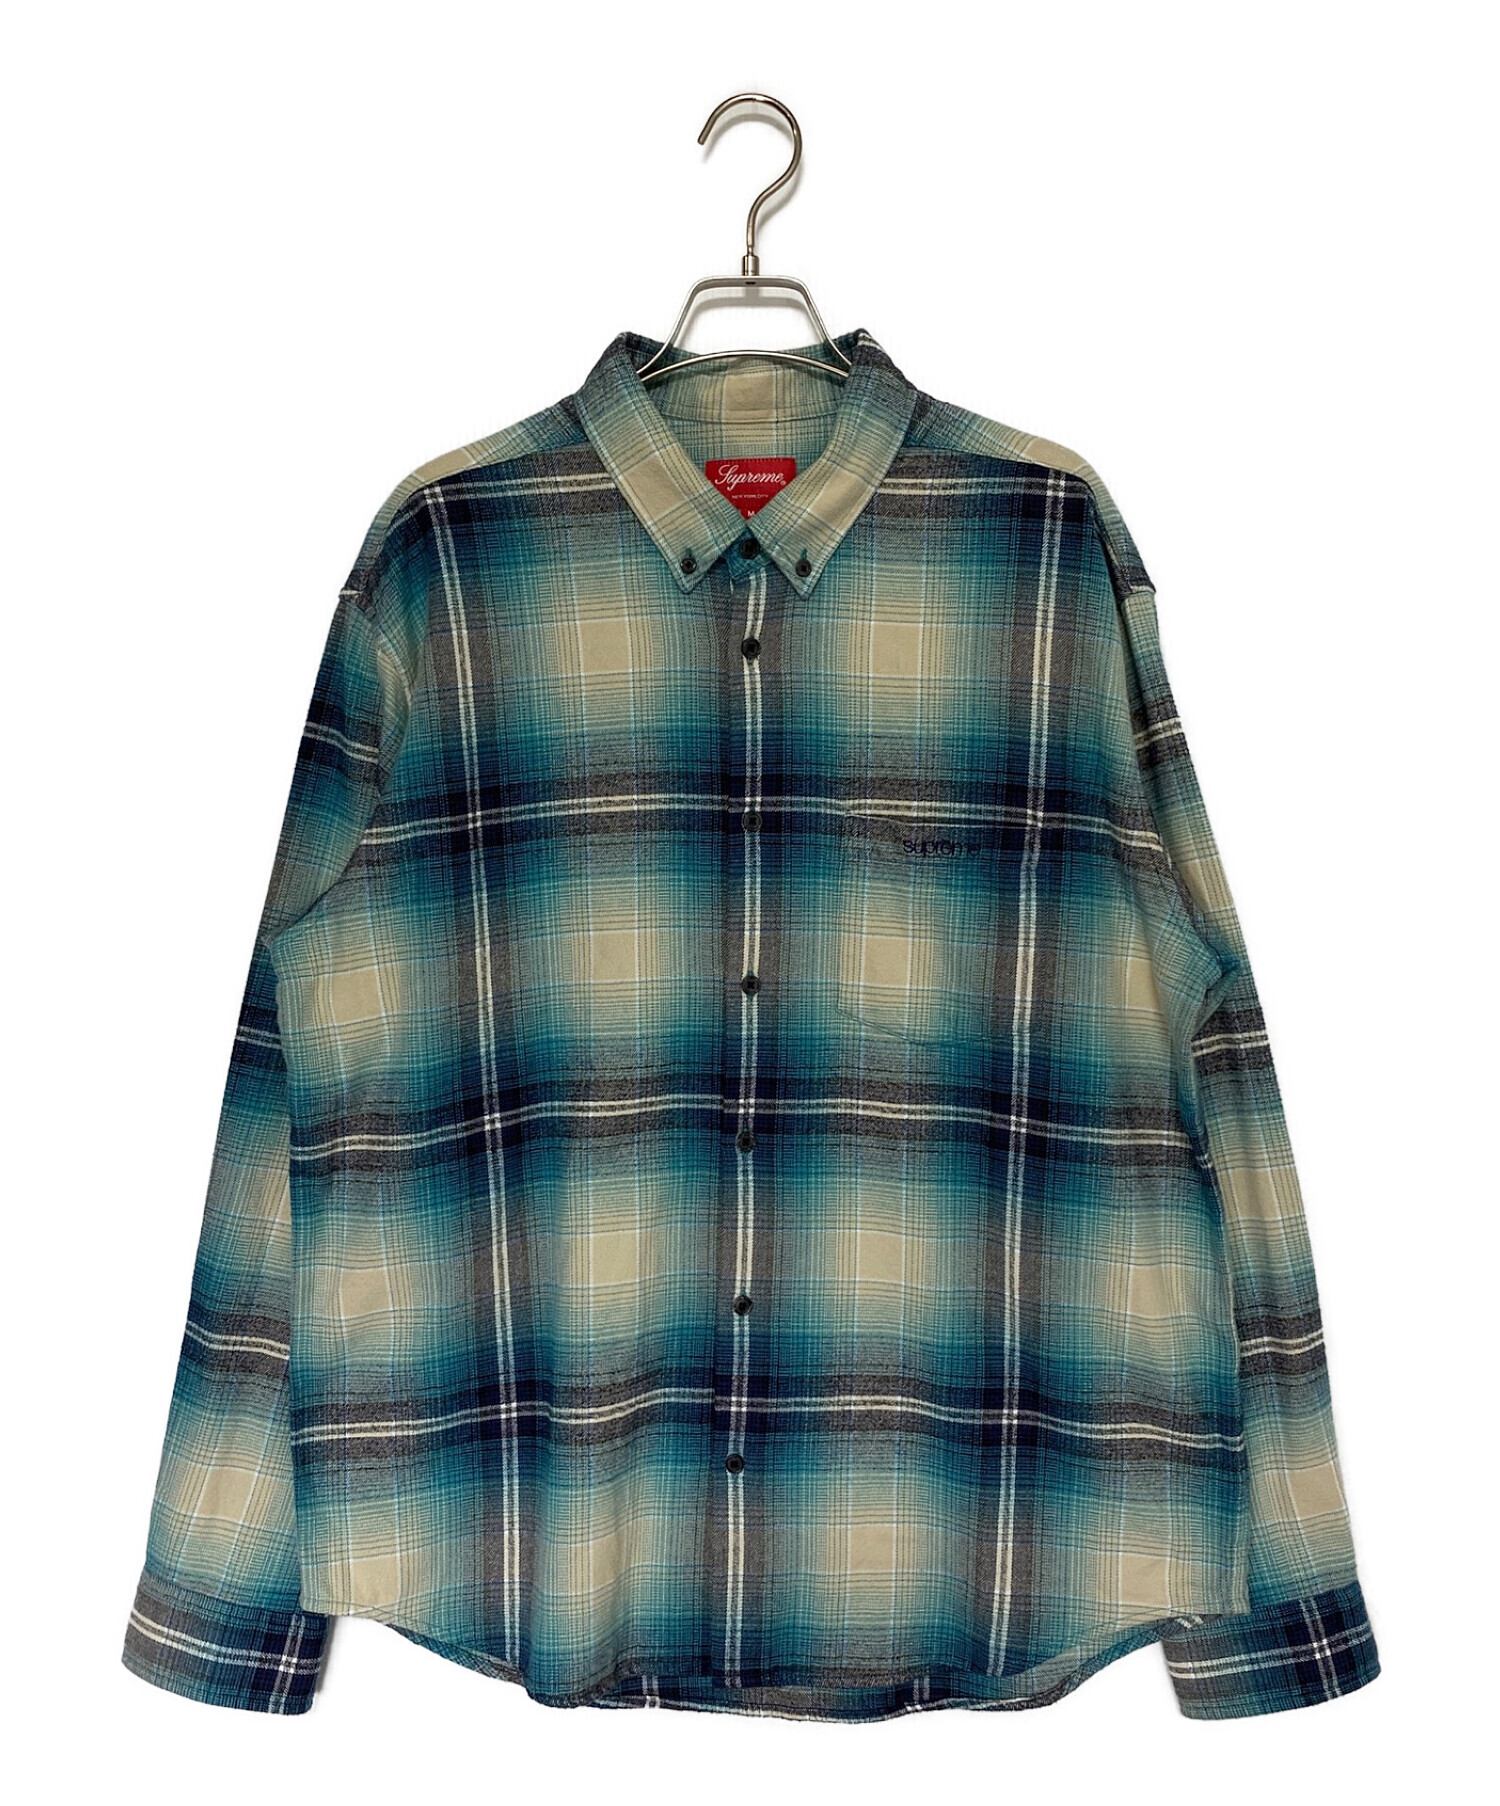 Supreme Plaid Flannel Shirt 青 Мサイズ